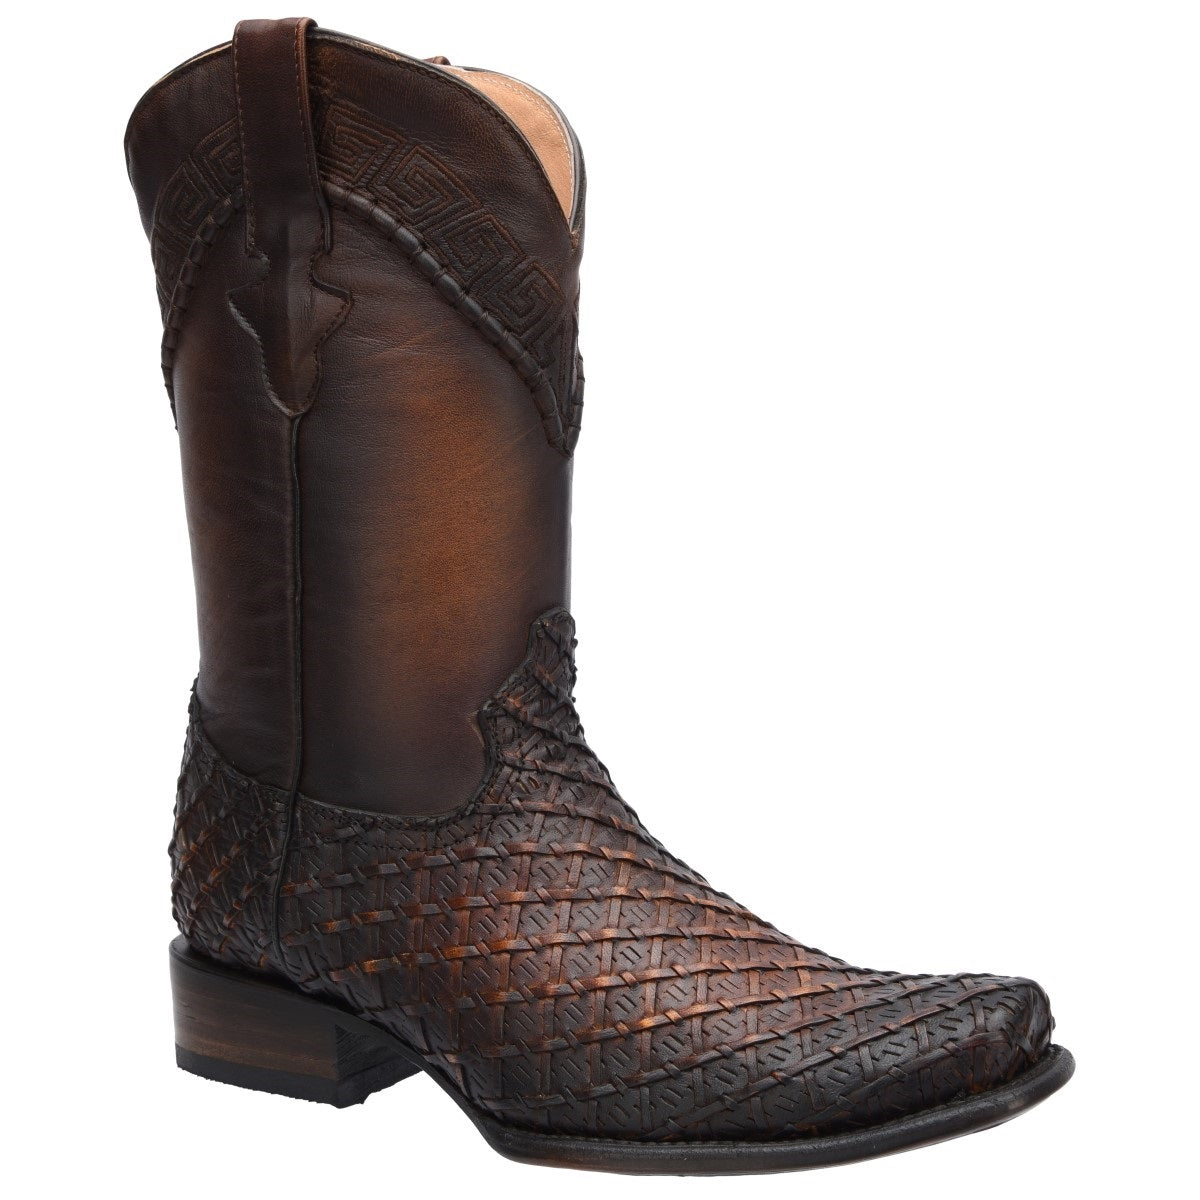 Botas Vaqueras TM-WD0013 - Western Boots